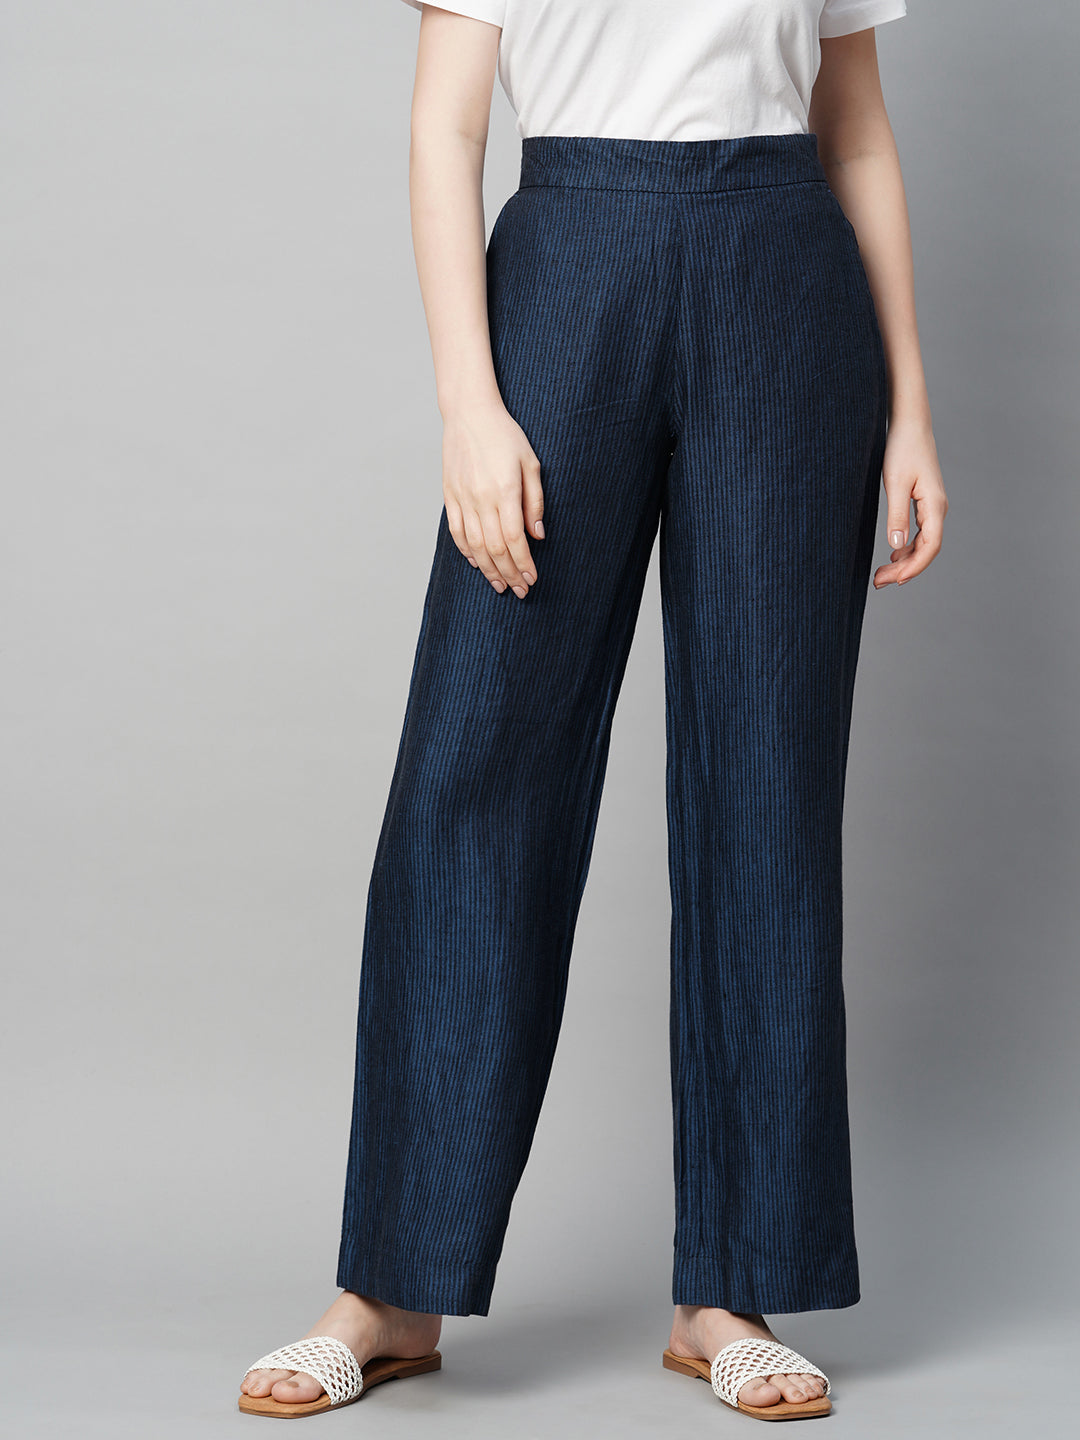 Buy Women's Linen Semi-Formal Wear Straight Fit Pants|Cottonworld